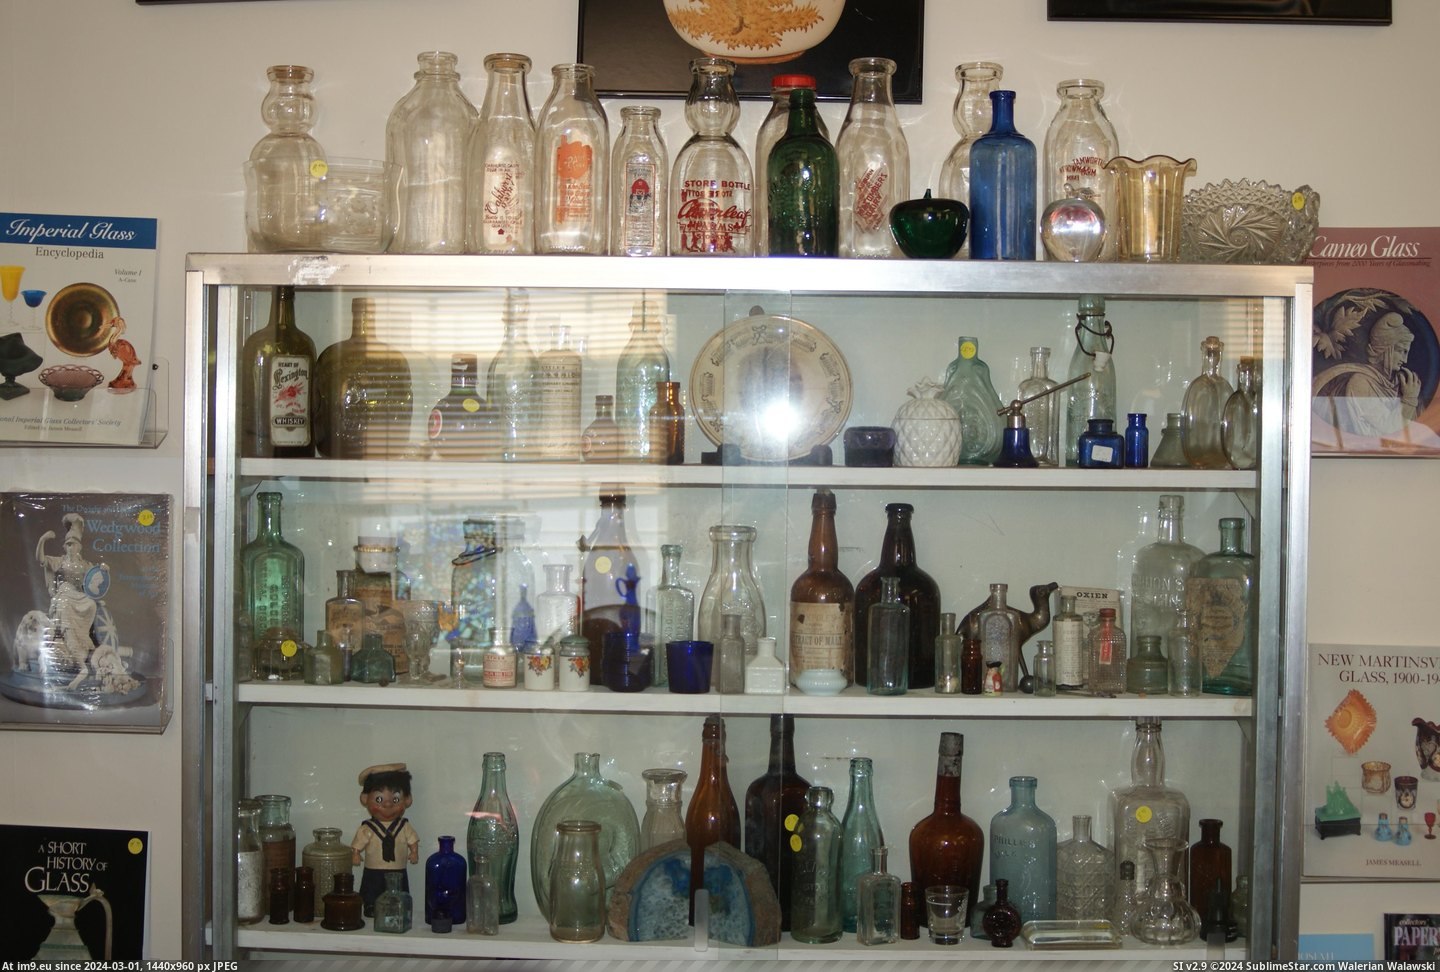 #Museum #Maine #Naples #Bottle MAINE BOTTLE MUSEUM NAPLES (17) Pic. (Bild von album MAINE BOTTLE MUSEUM))